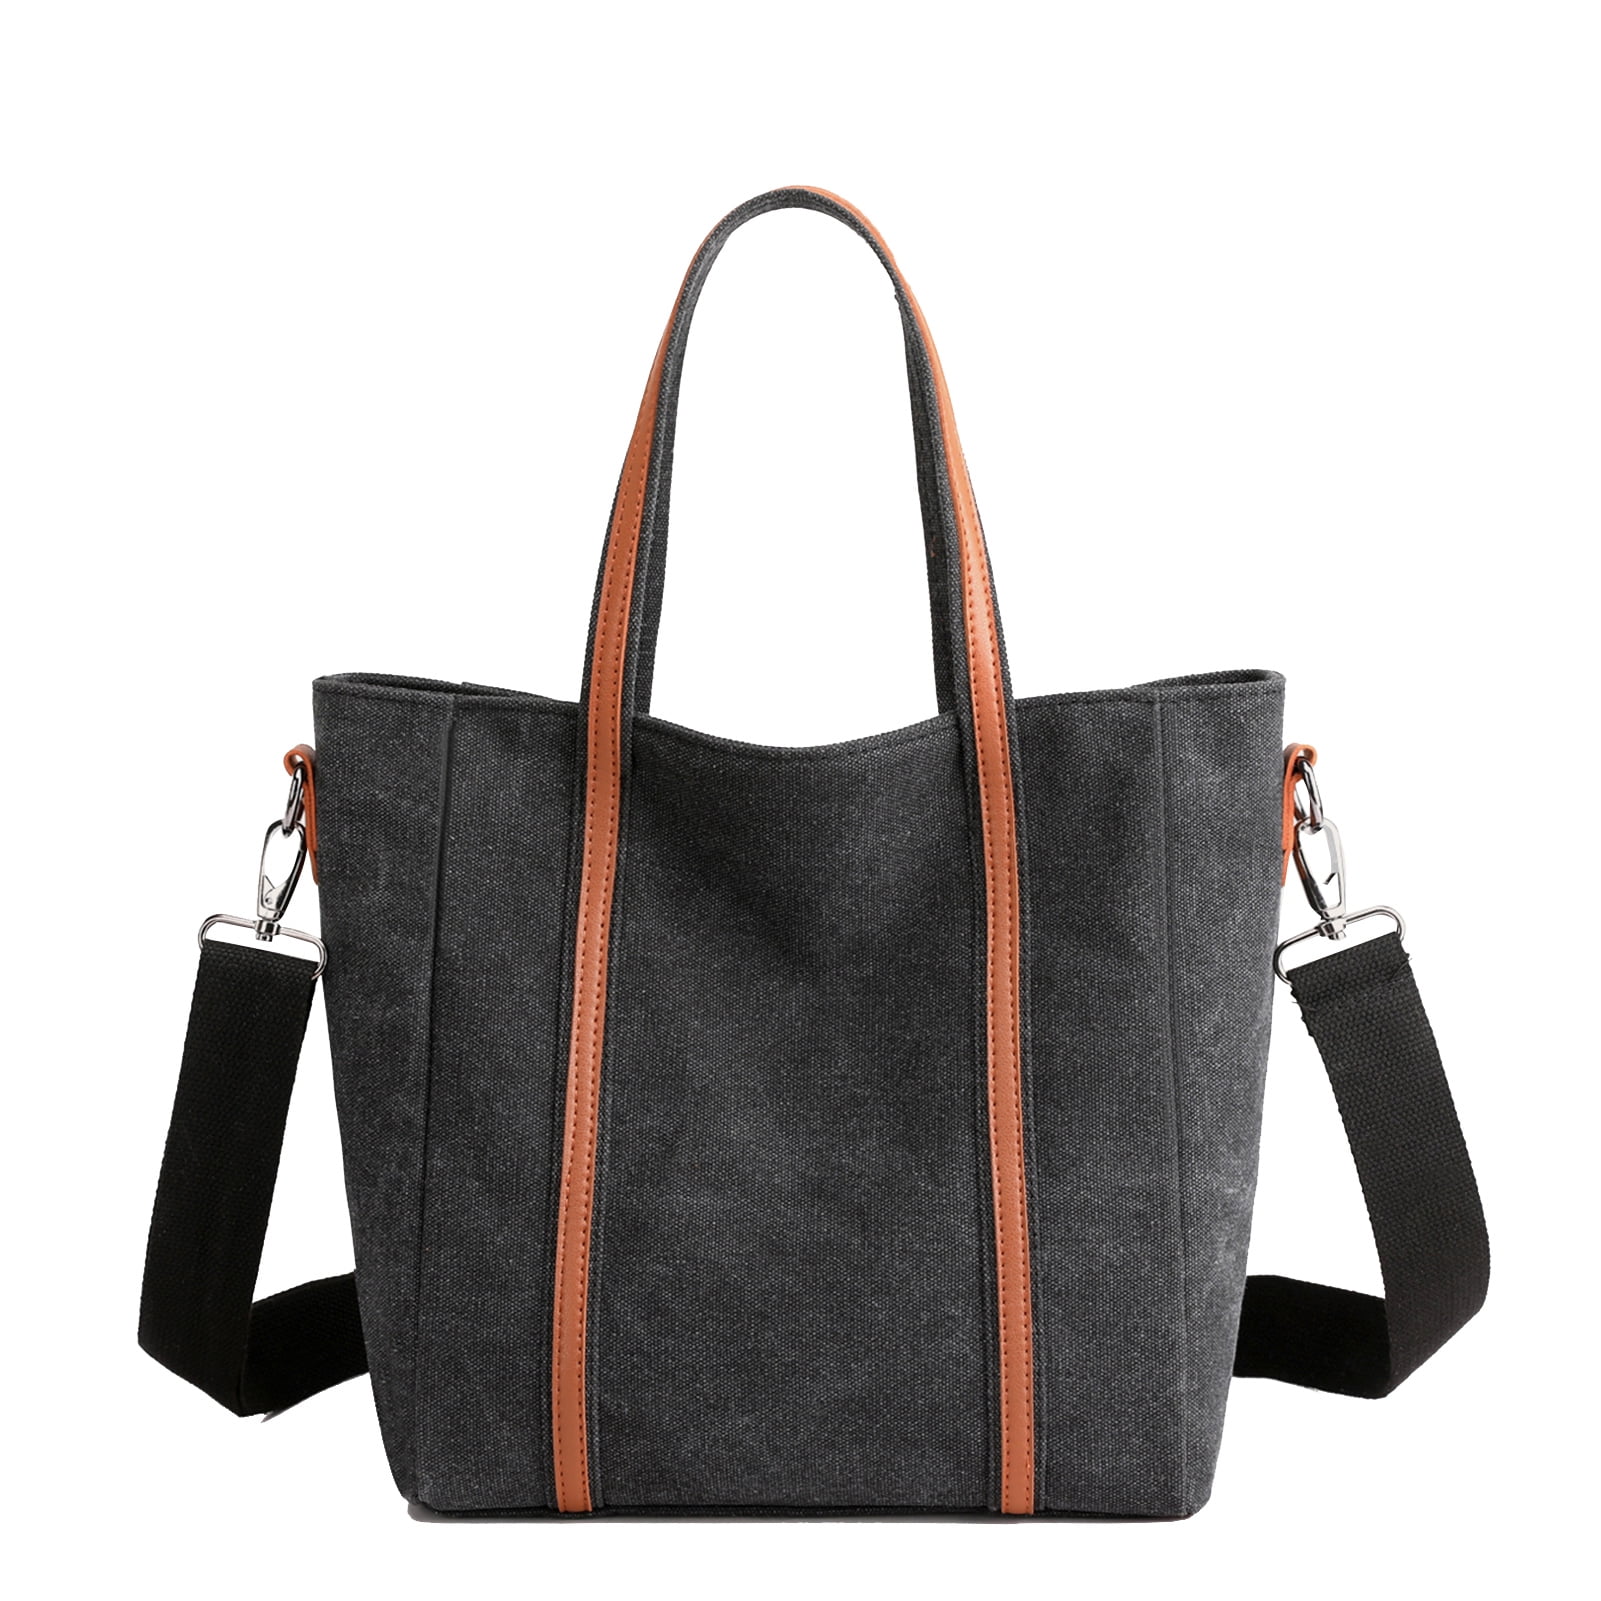 Zippered Close Women' Large Black Handbag Purse with Adjustable Shoulder Strap